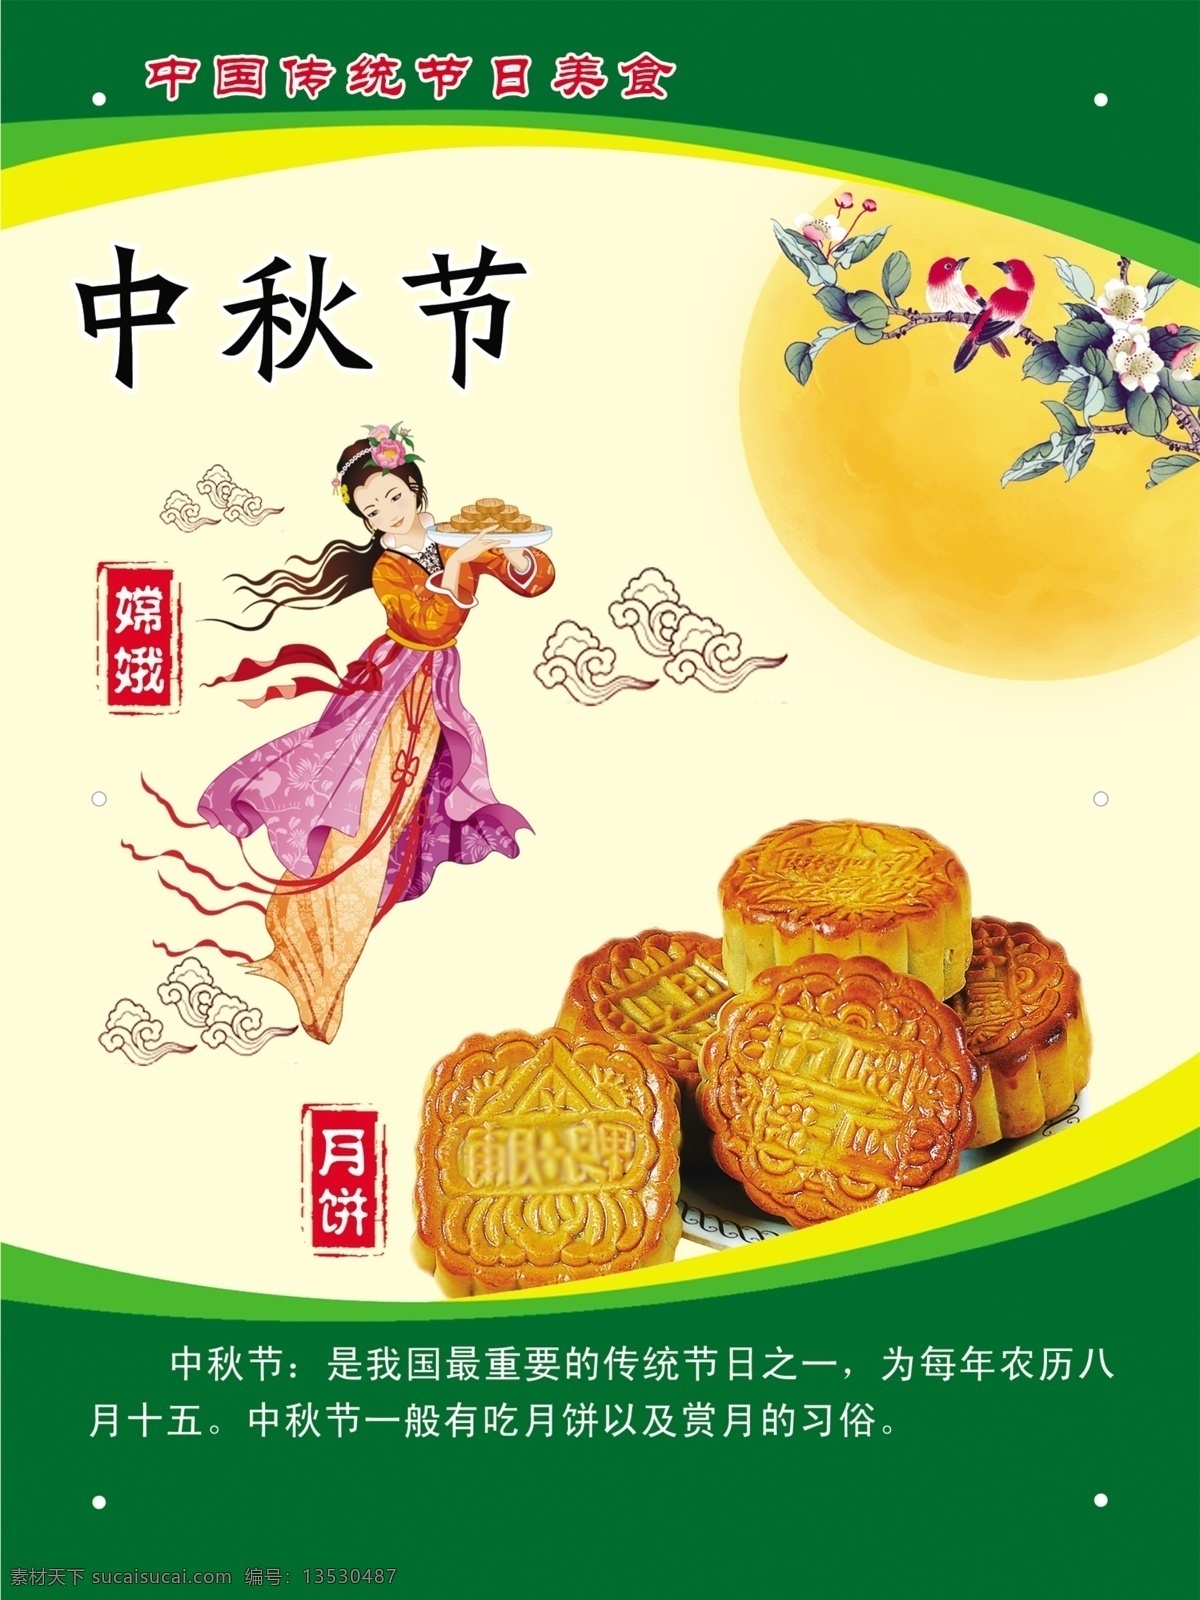 传统节日 中秋节 节日美食 嫦娥 月饼